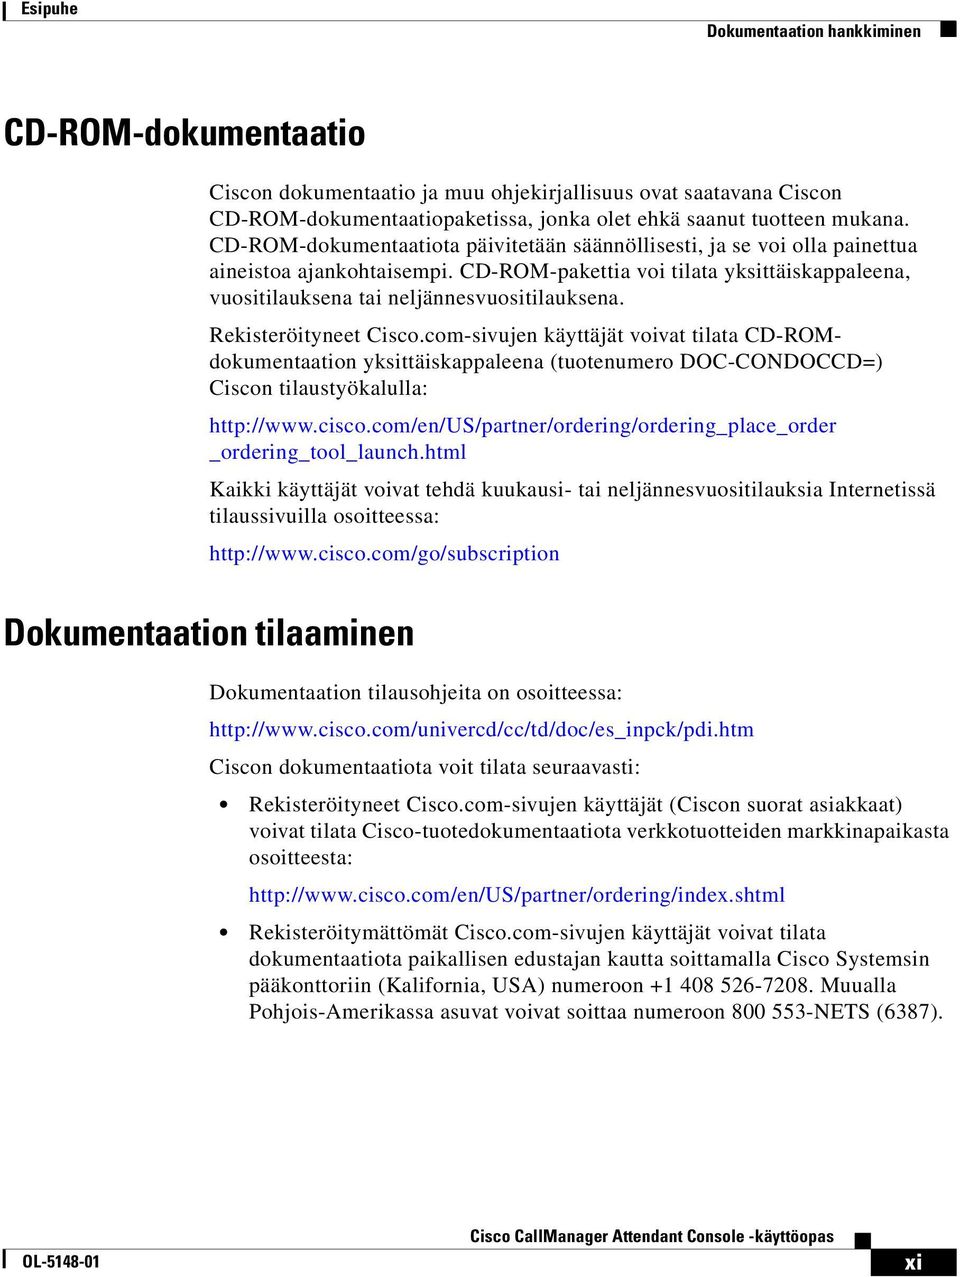 Rekisteröityneet Cisco.com-sivujen käyttäjät voivat tilata CD-ROMdokumentaation yksittäiskappaleena (tuotenumero DOC-CONDOCCD=) Ciscon tilaustyökalulla: http://www.cisco.